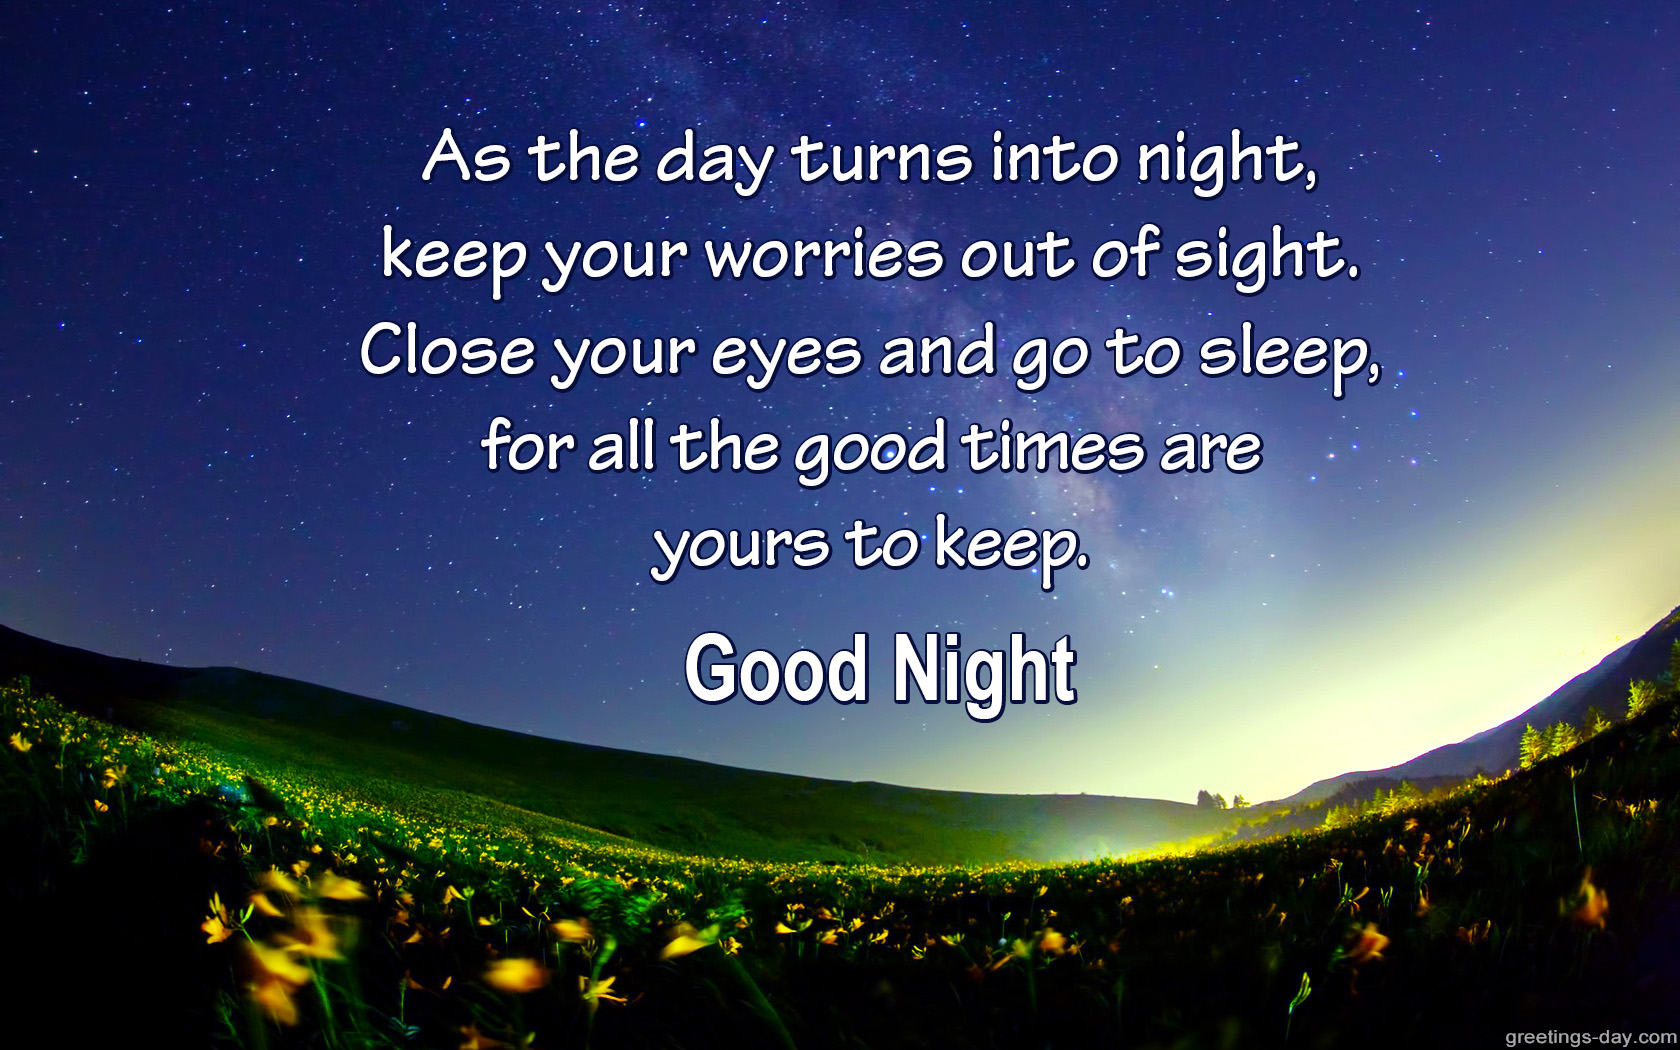 good-night-wishes.jpg